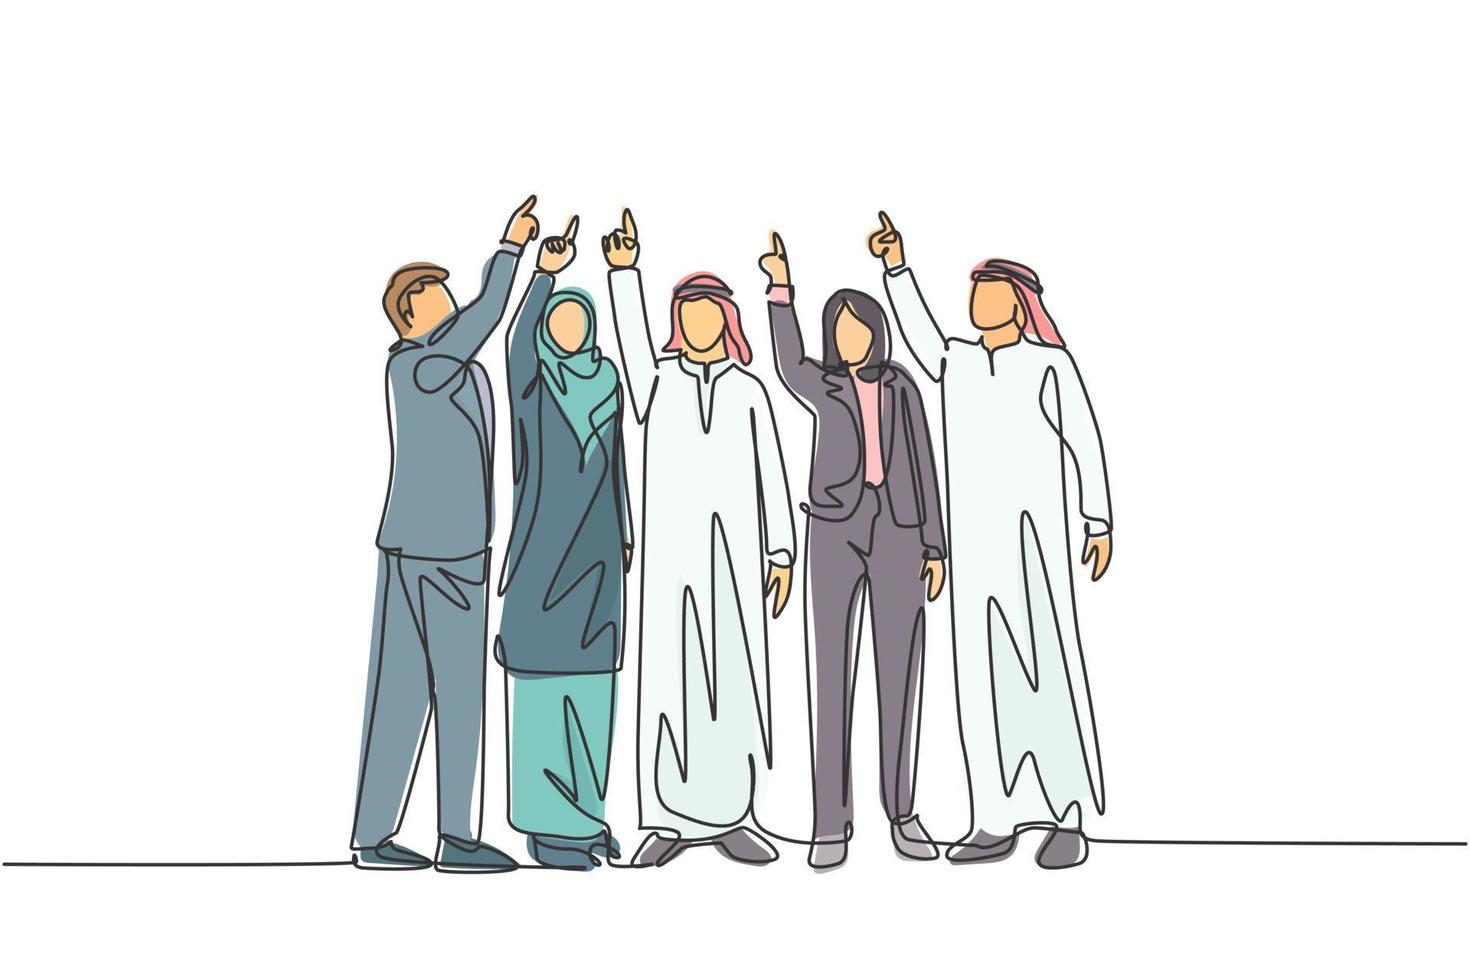 enkele doorlopende lijntekening van jonge mannelijke en vrouwelijke moslimmanagers die met de vinger naar de hemel wijzen. Arabische doek uit het Midden-Oosten Shmagh, kandura, hijab, gewaad. één lijn tekenen ontwerp vectorillustratie vector